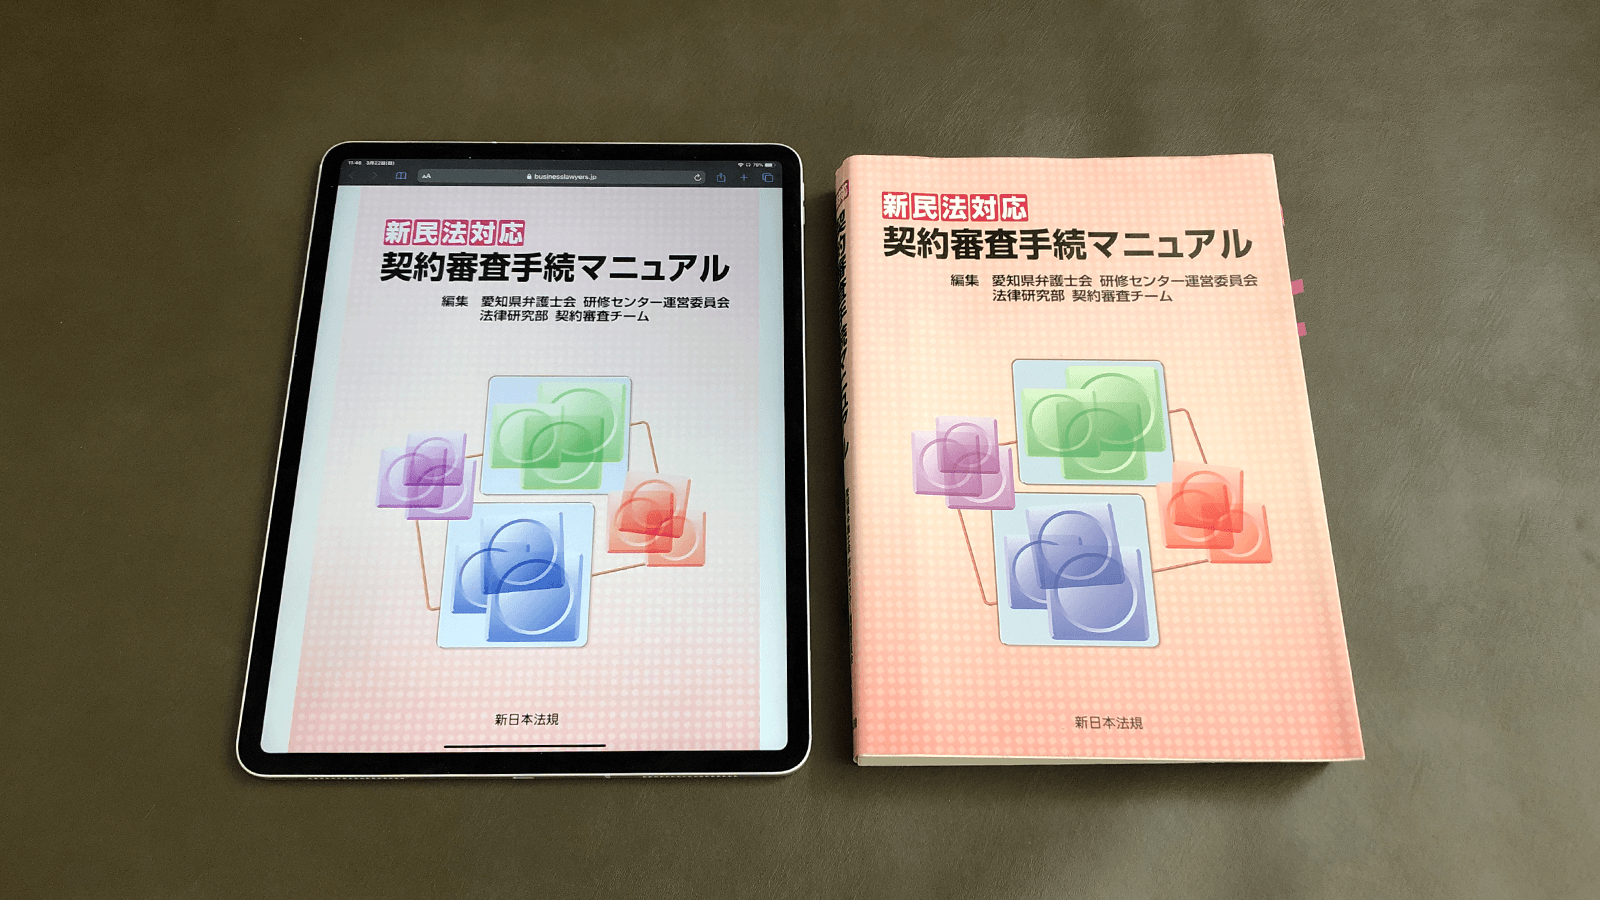 新日本法規に多いB5判サイズの大きな実務書も、iPad Pro 12.9インチなら原寸大表示でどこからでもアクセスできる